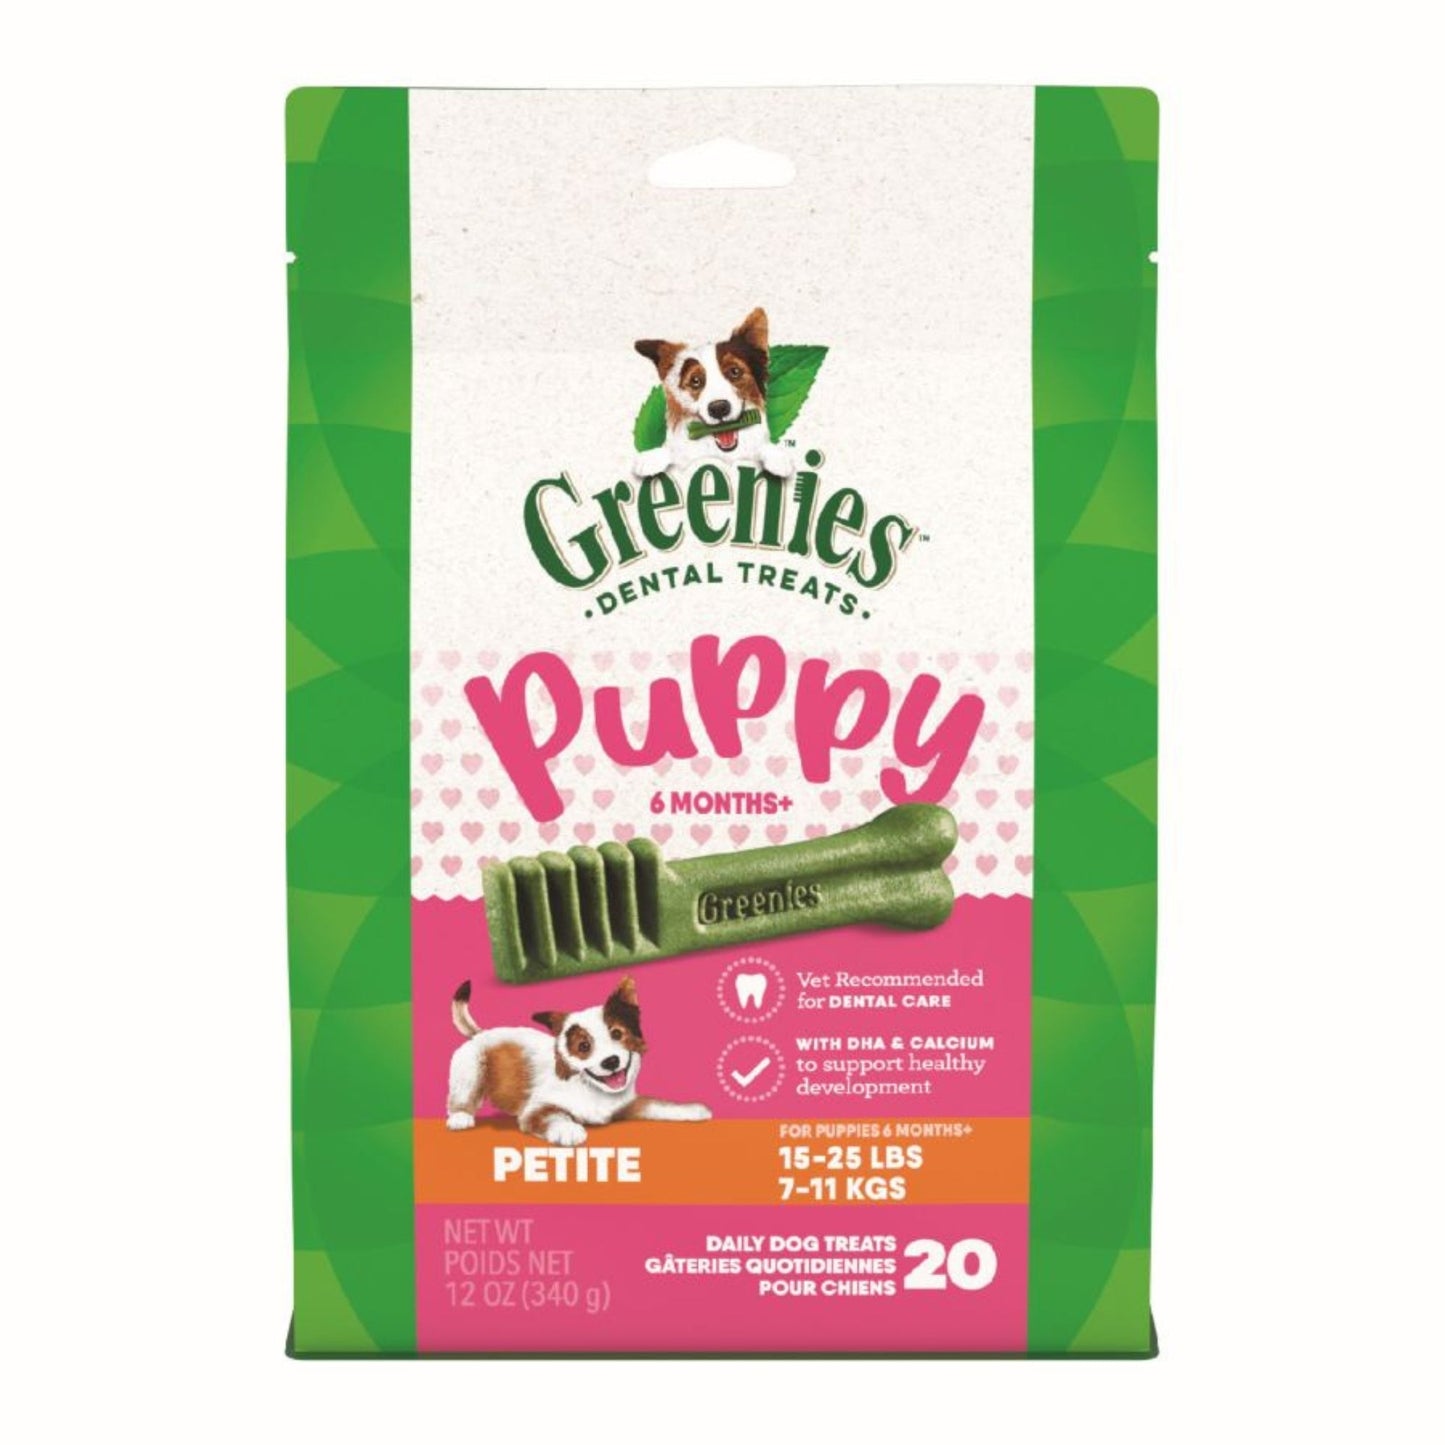 Greenies Puppy 6+ Months Dog Dental Treats Teenie, 1ea/6oz.